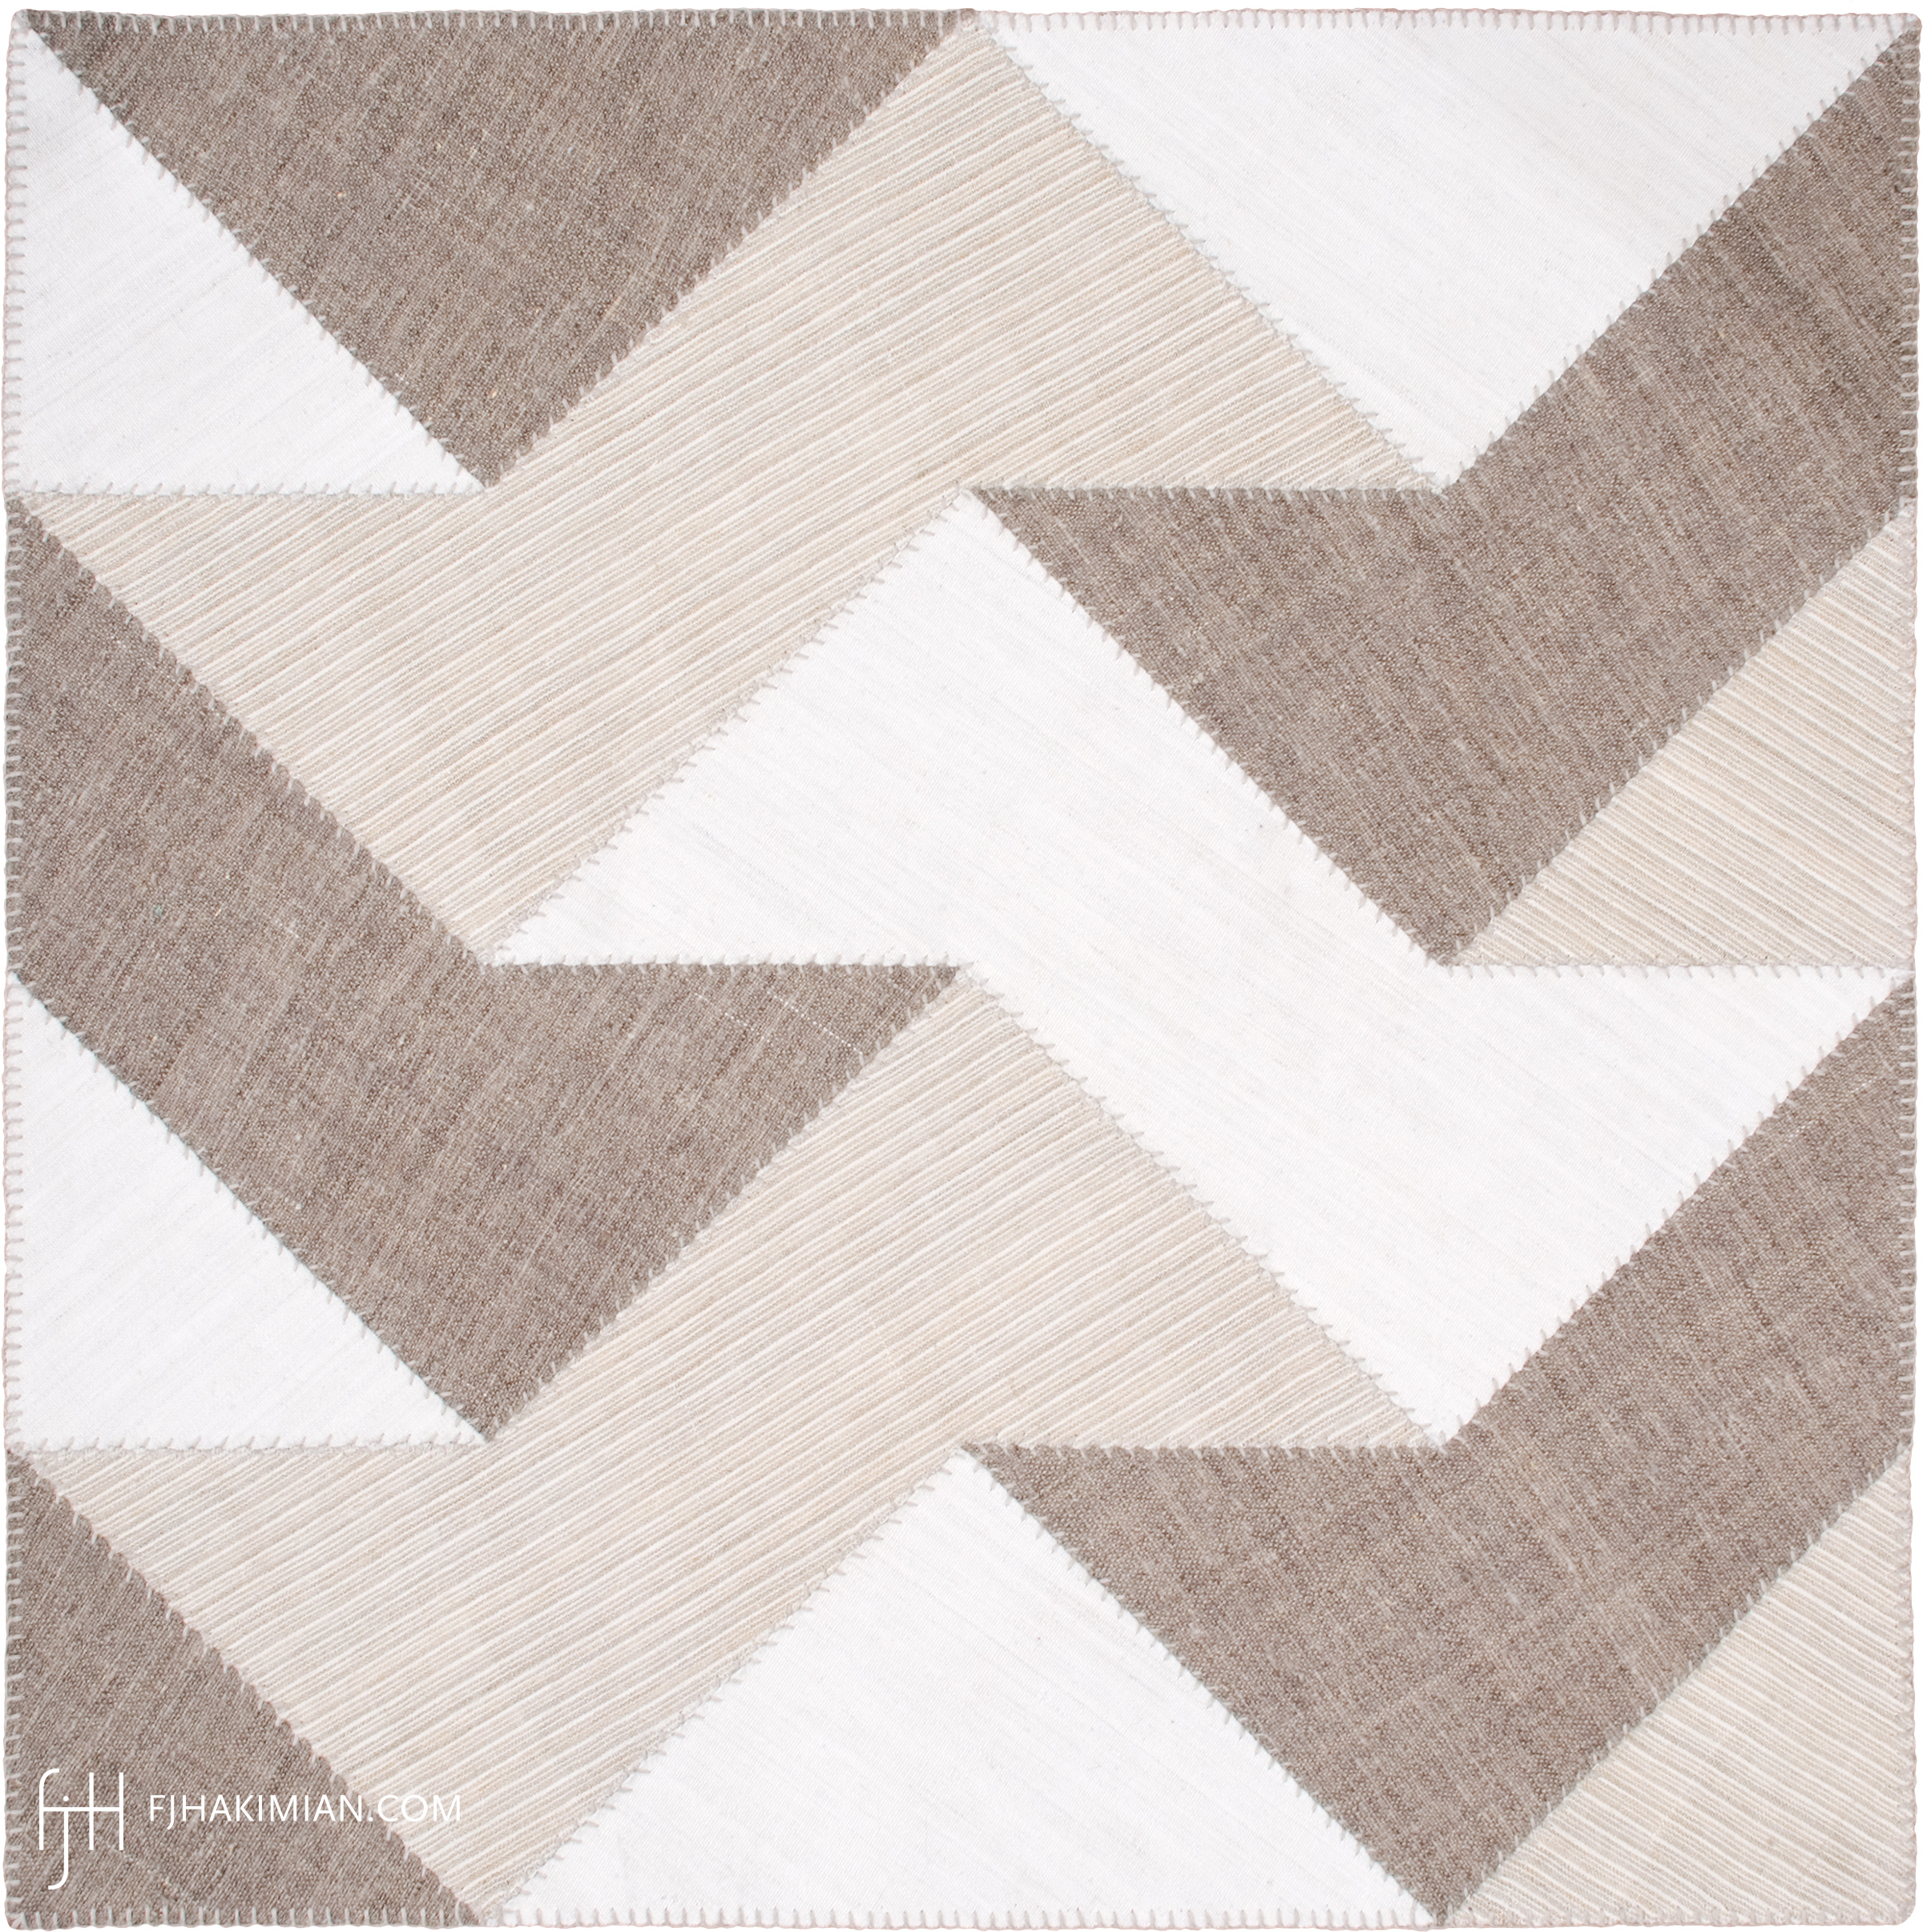 FJ Hakimian | 37160 | Custom Carpet